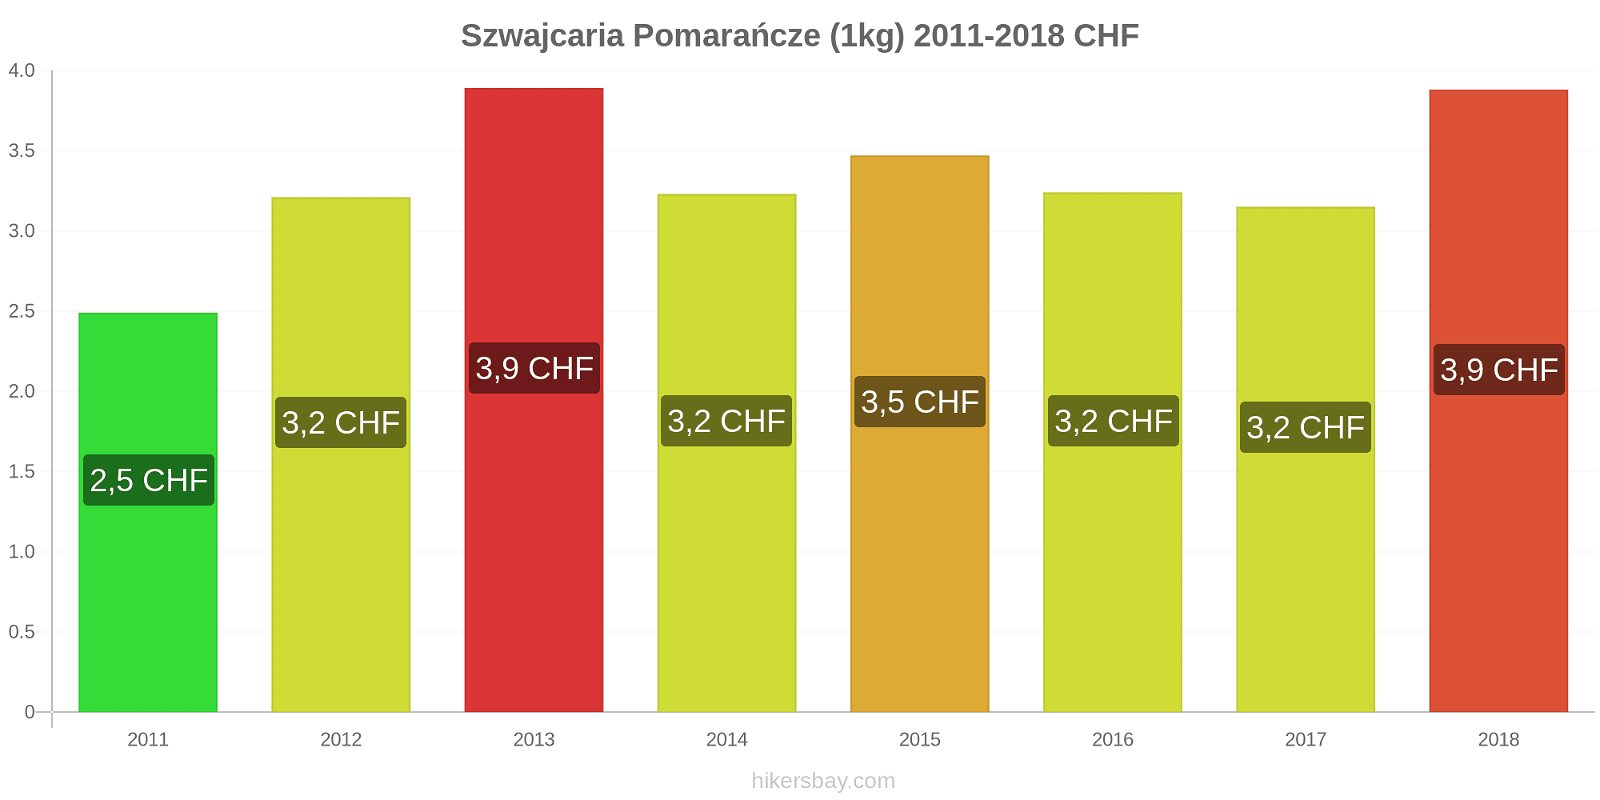 Szwajcaria zmiany cen Pomarańcze (1kg) hikersbay.com